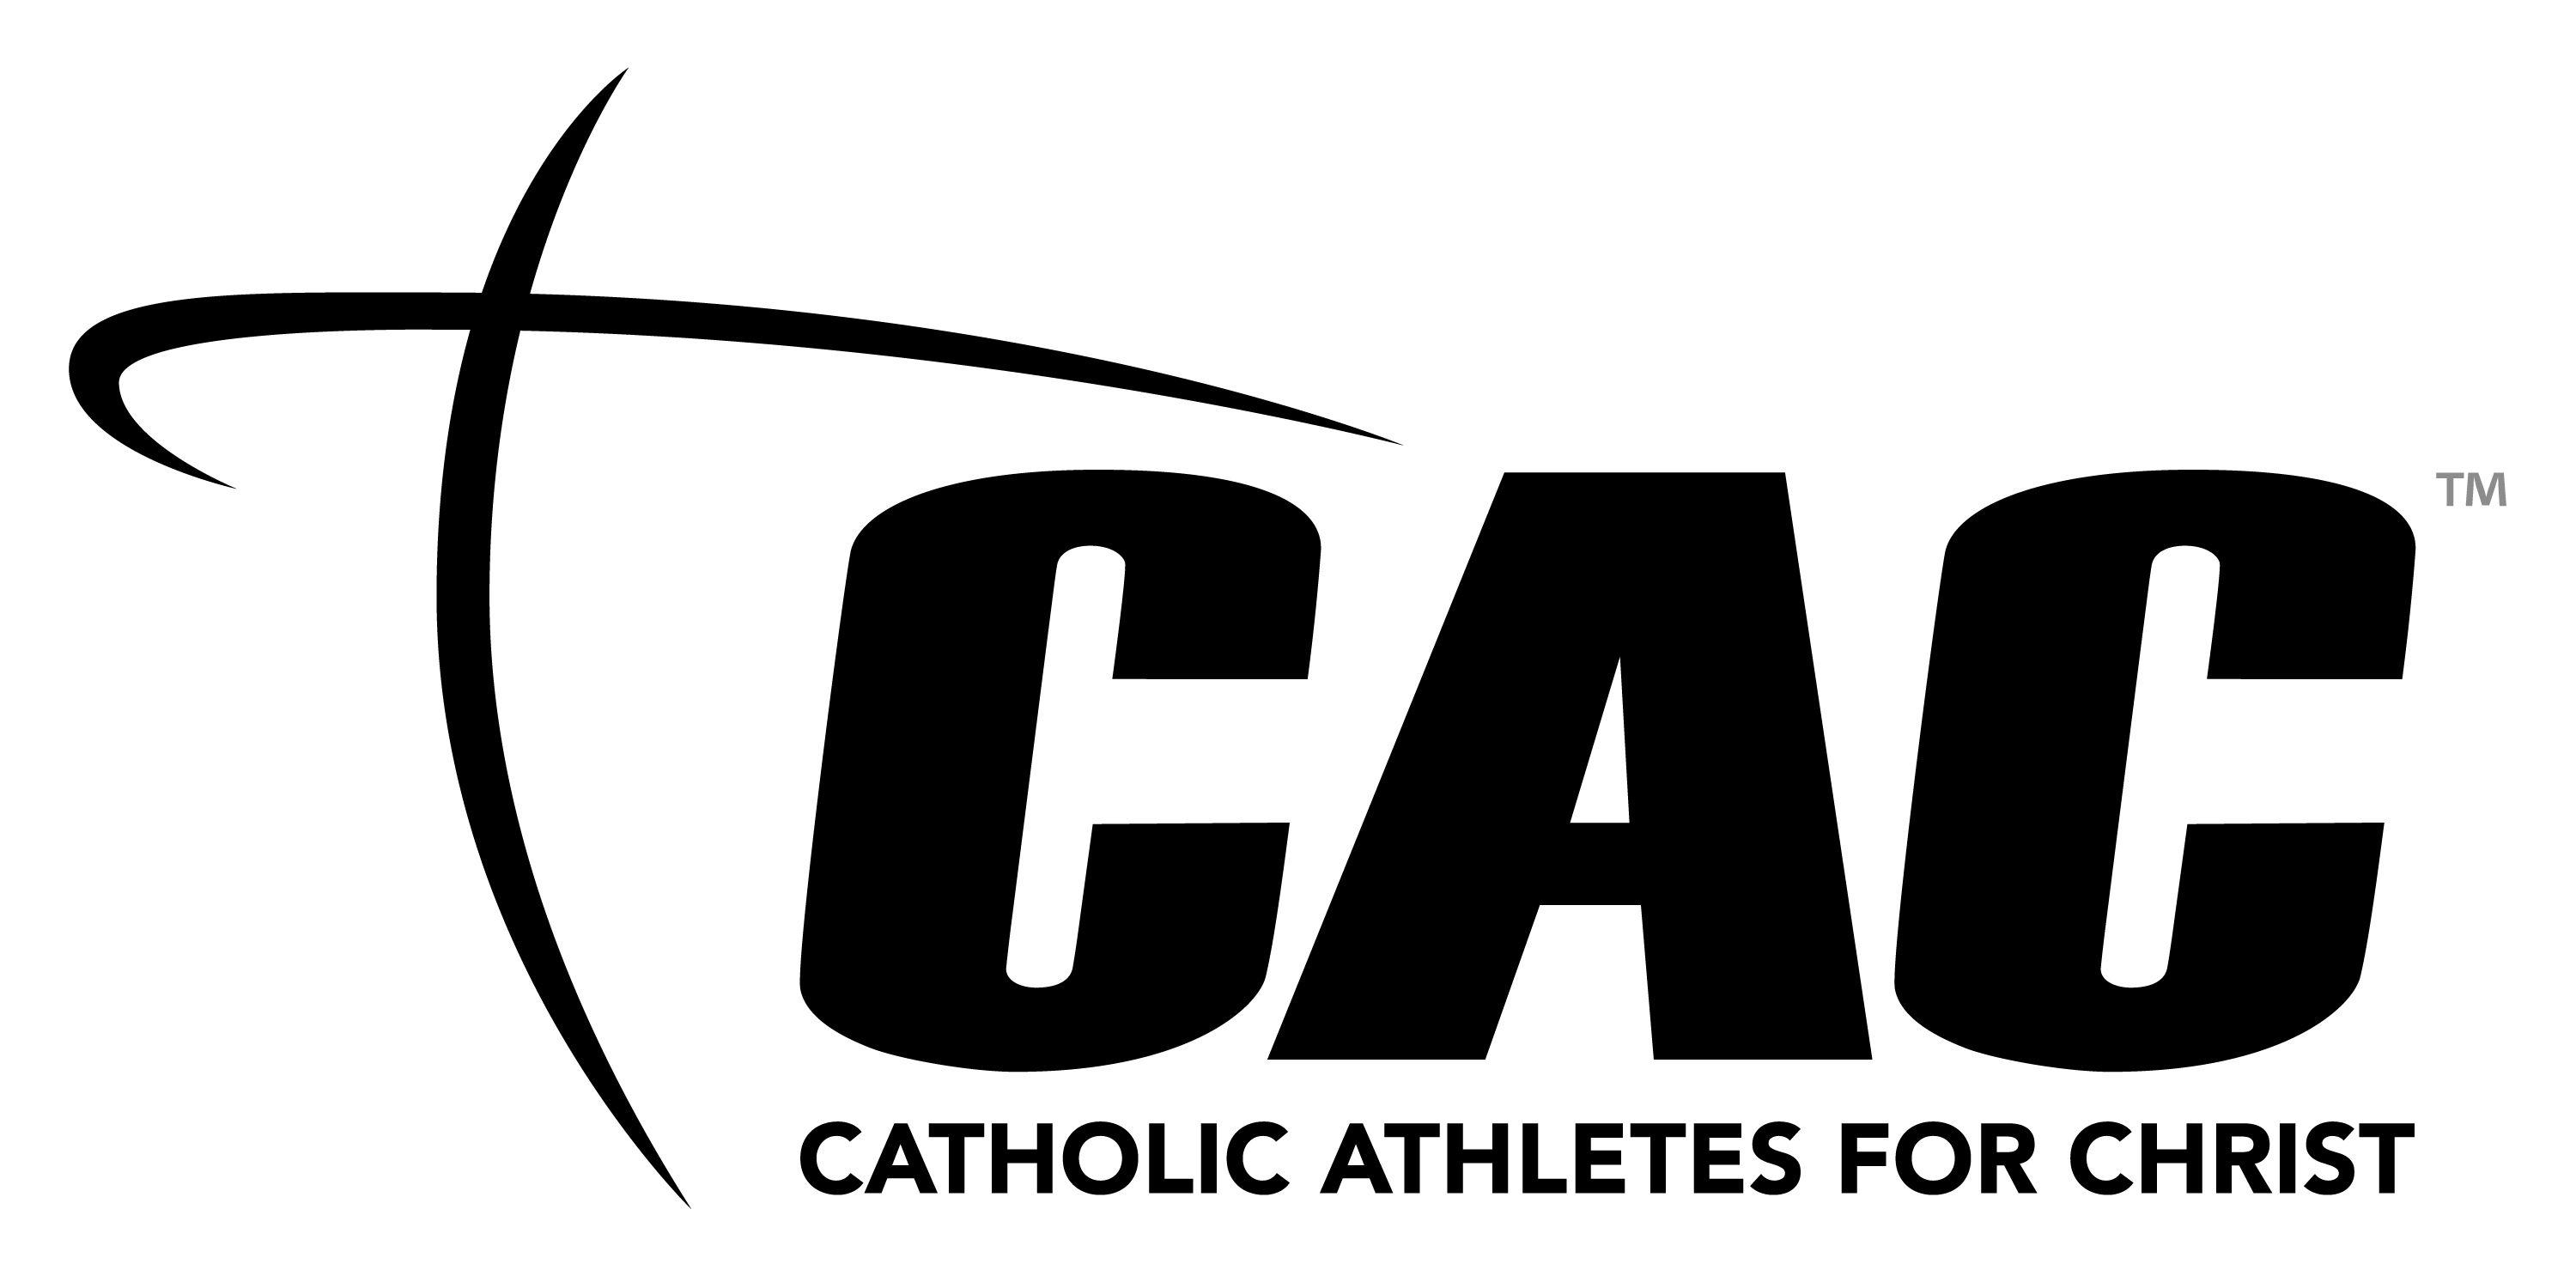 Black Electronic Logo - Downloads Catholic Athletes for Christ